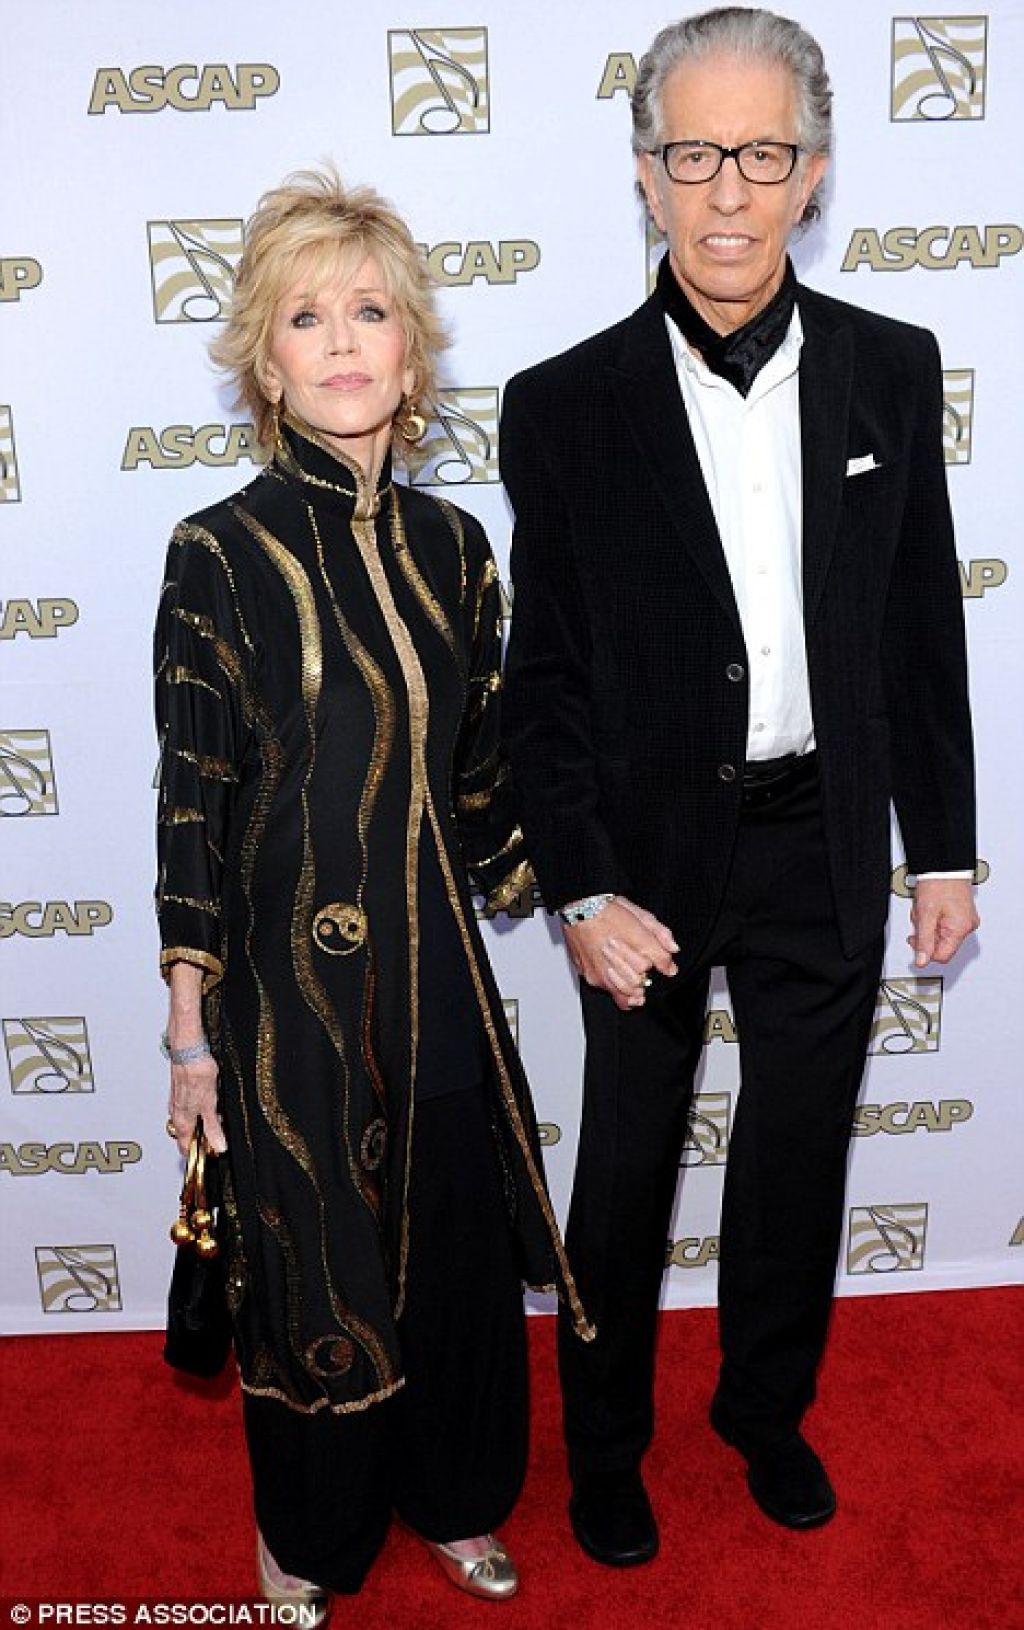 Jane Fonda pri 74 letih odkrila najboljši seks